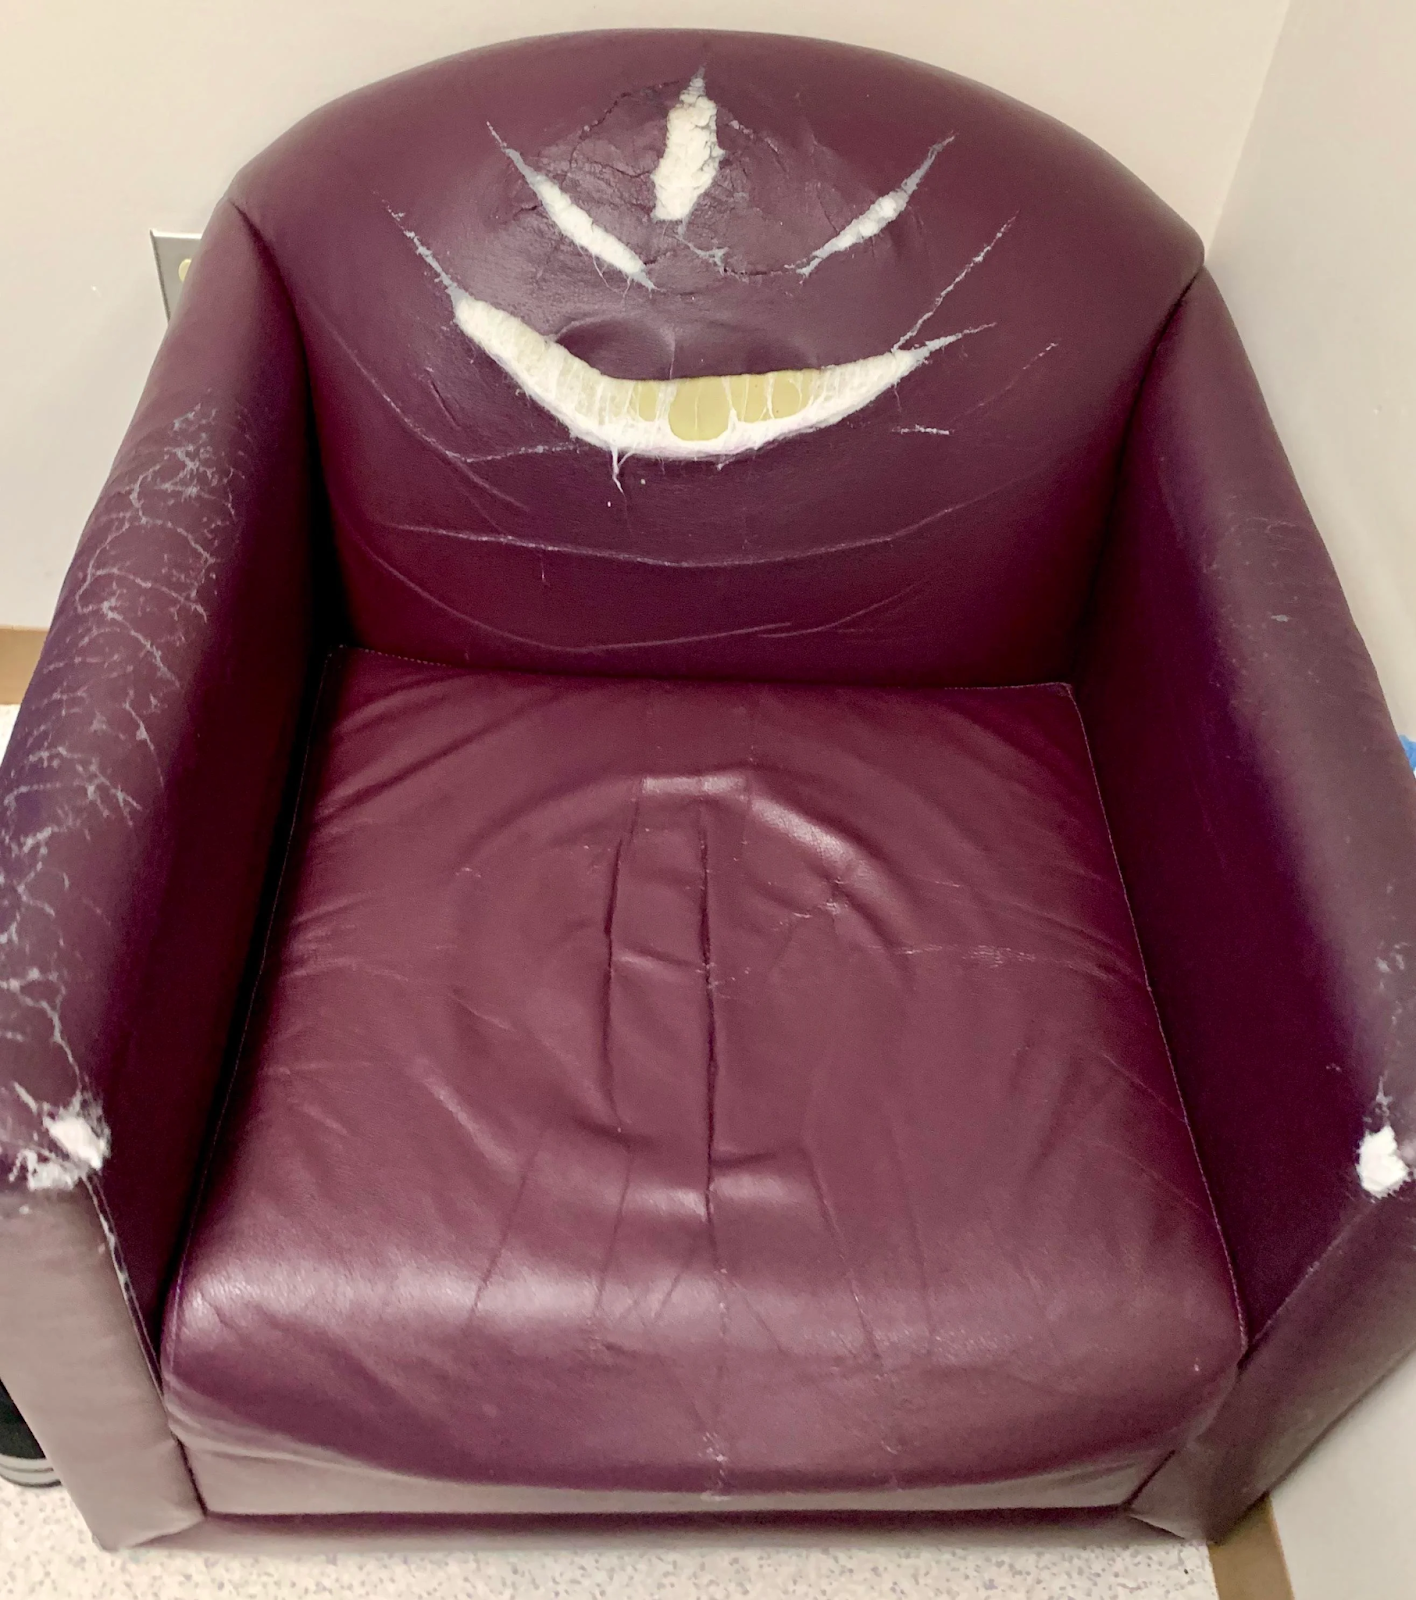 An evil chair